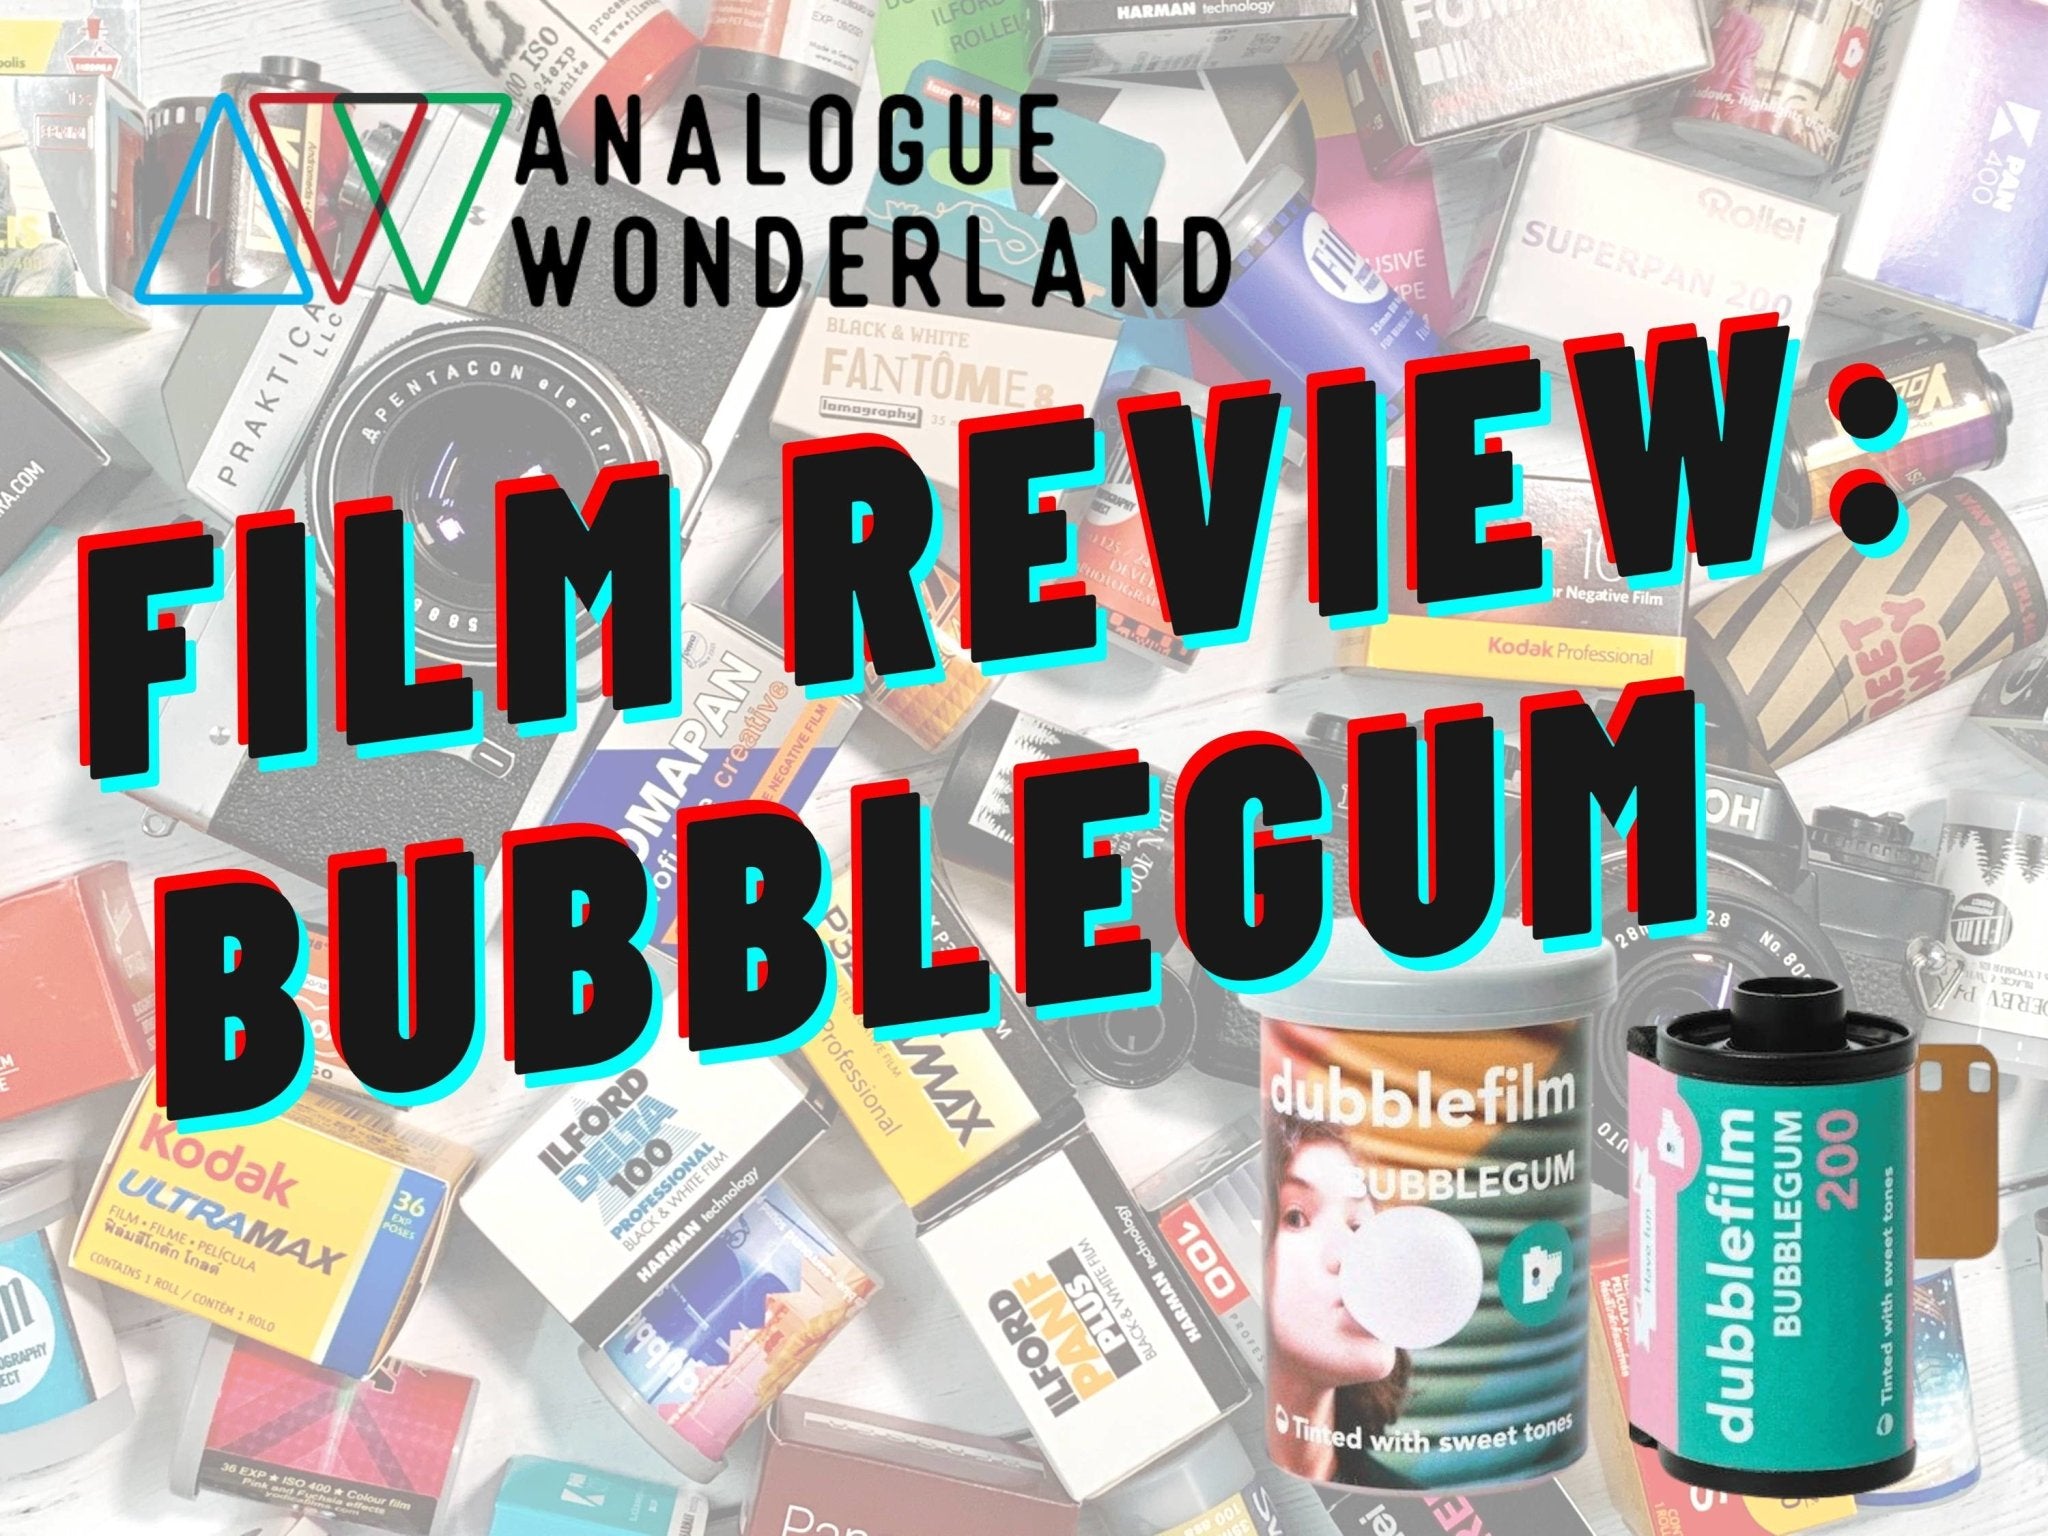 DubbleFilm Bubblegum Review - Analogue Wonderland